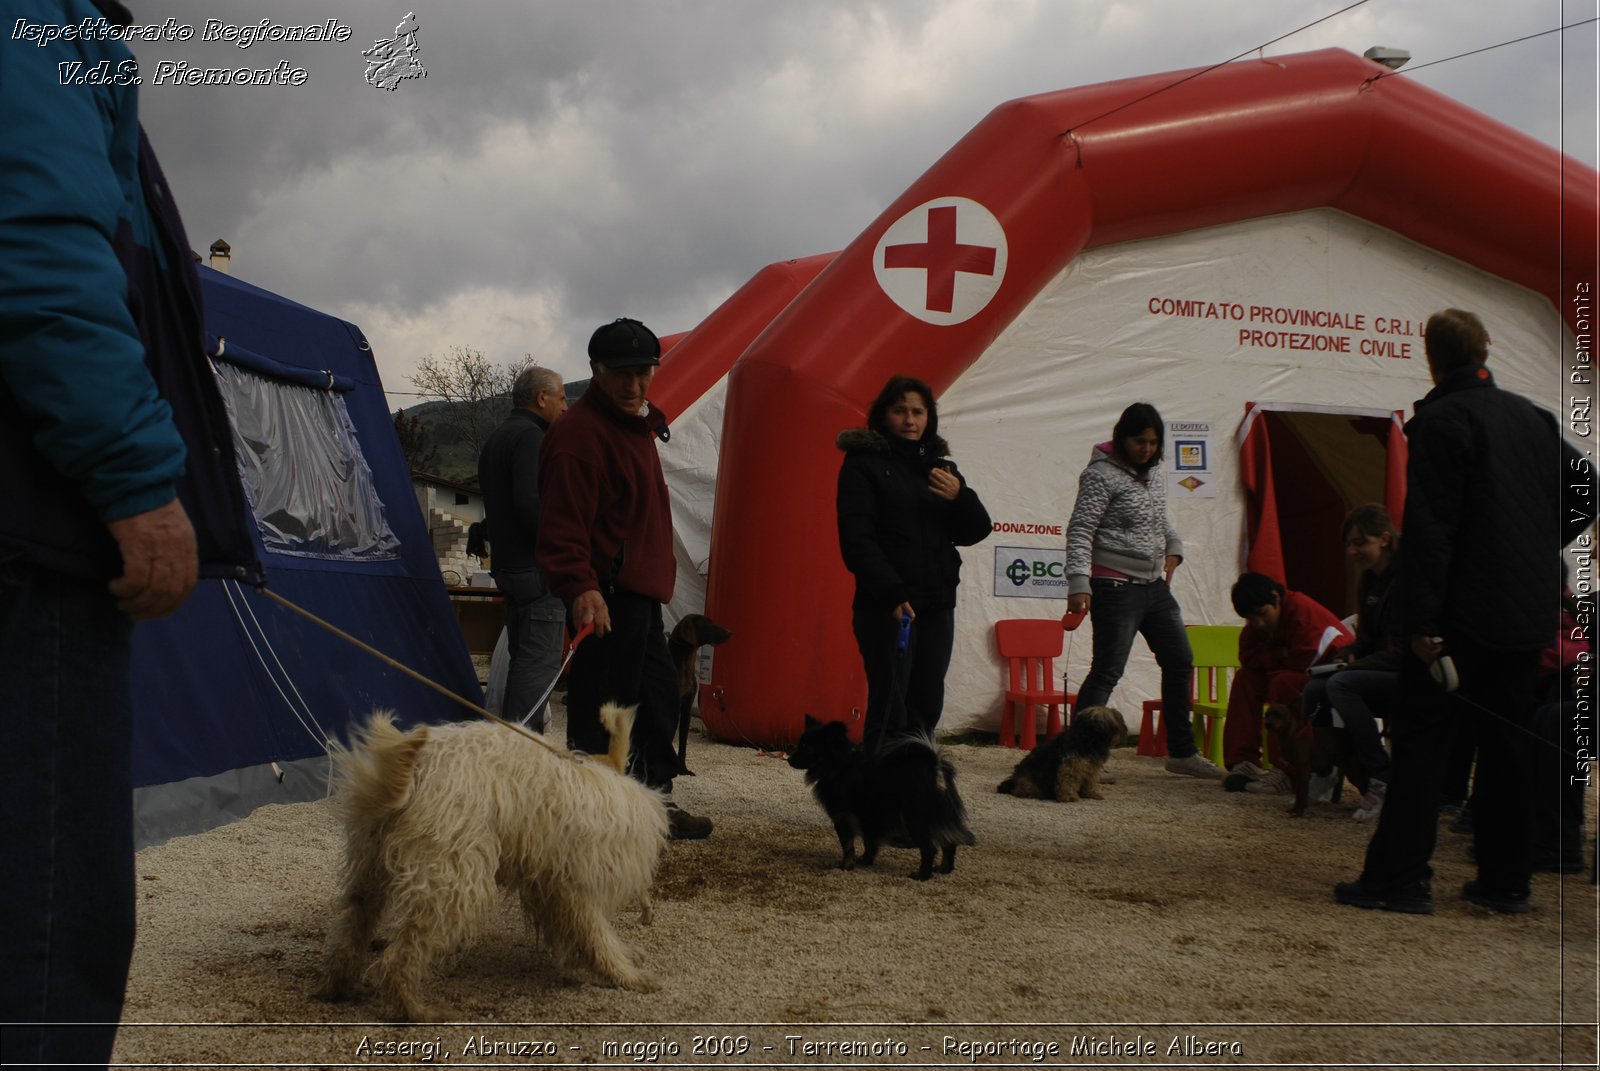 Assergi, Abruzzo -  maggio 2009 - Terremoto - Reportage Michele Albera -  Croce Rossa Italiana - Ispettorato Regionale Volontari del Soccorso Piemonte